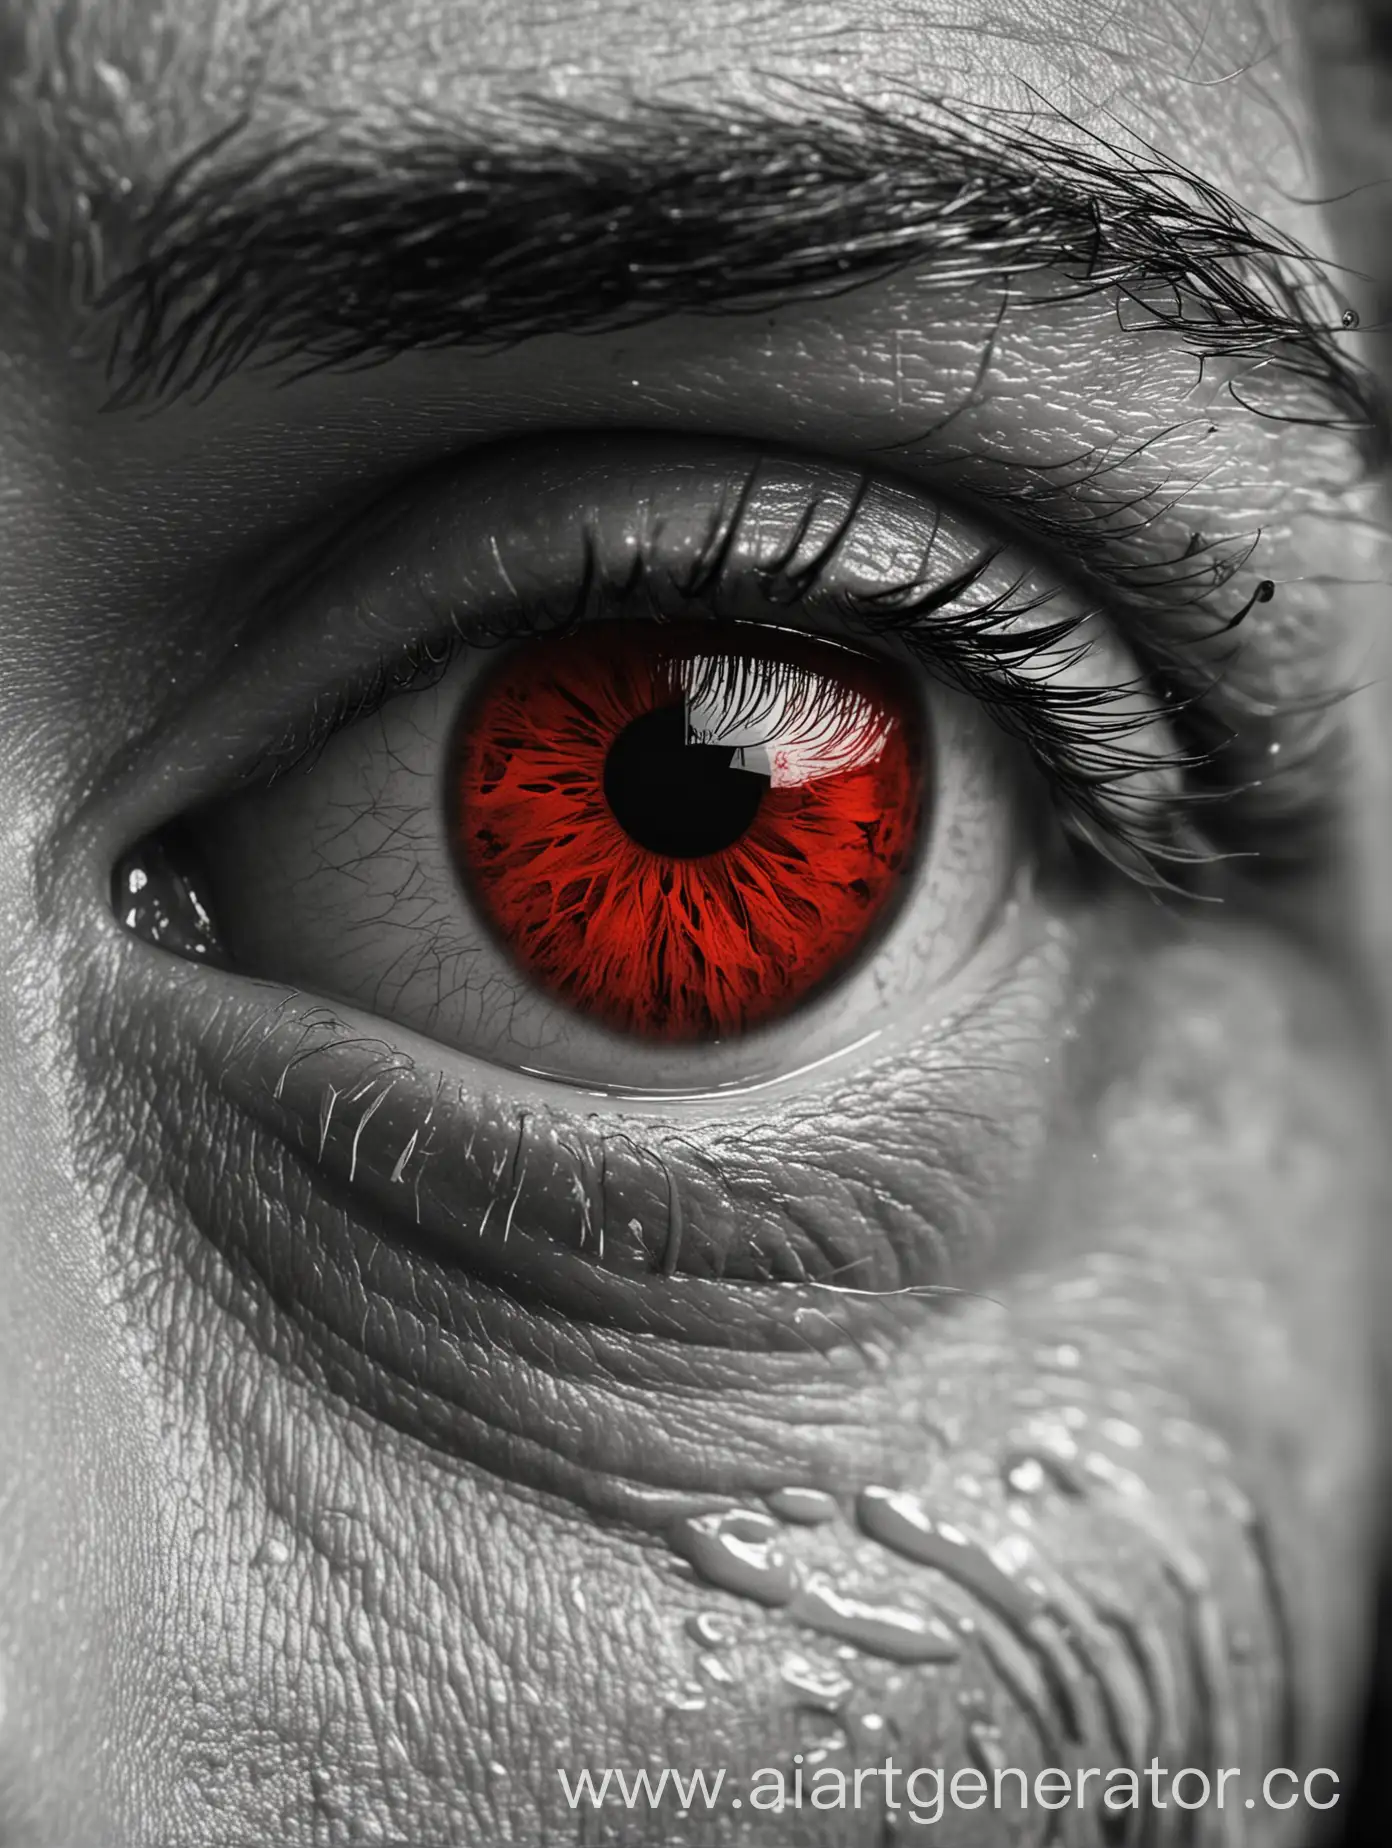 чёрно-белая картинка, на которой крупным планом изображён глаз мужчины, из которого текут кровавые слёзы красного цвета